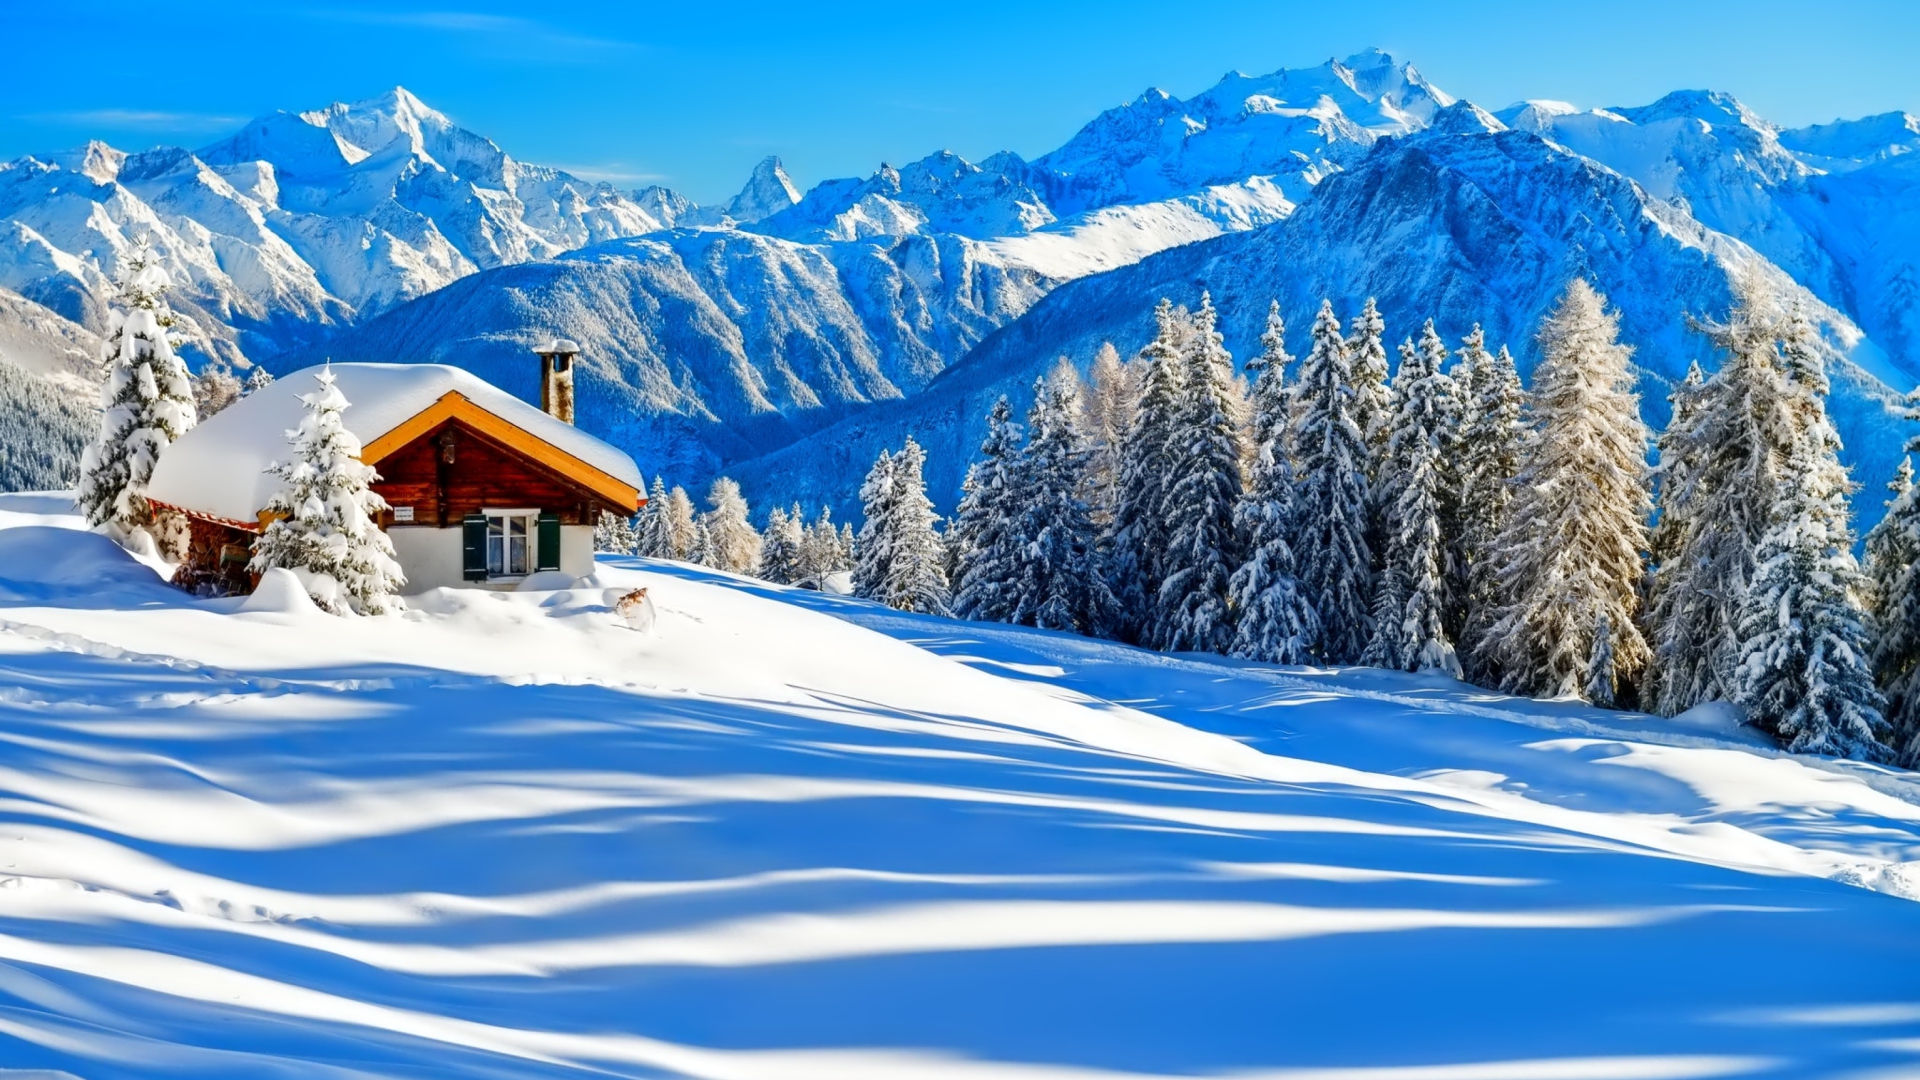 Switzerland Alps in Winter wallpaper 1920x1080